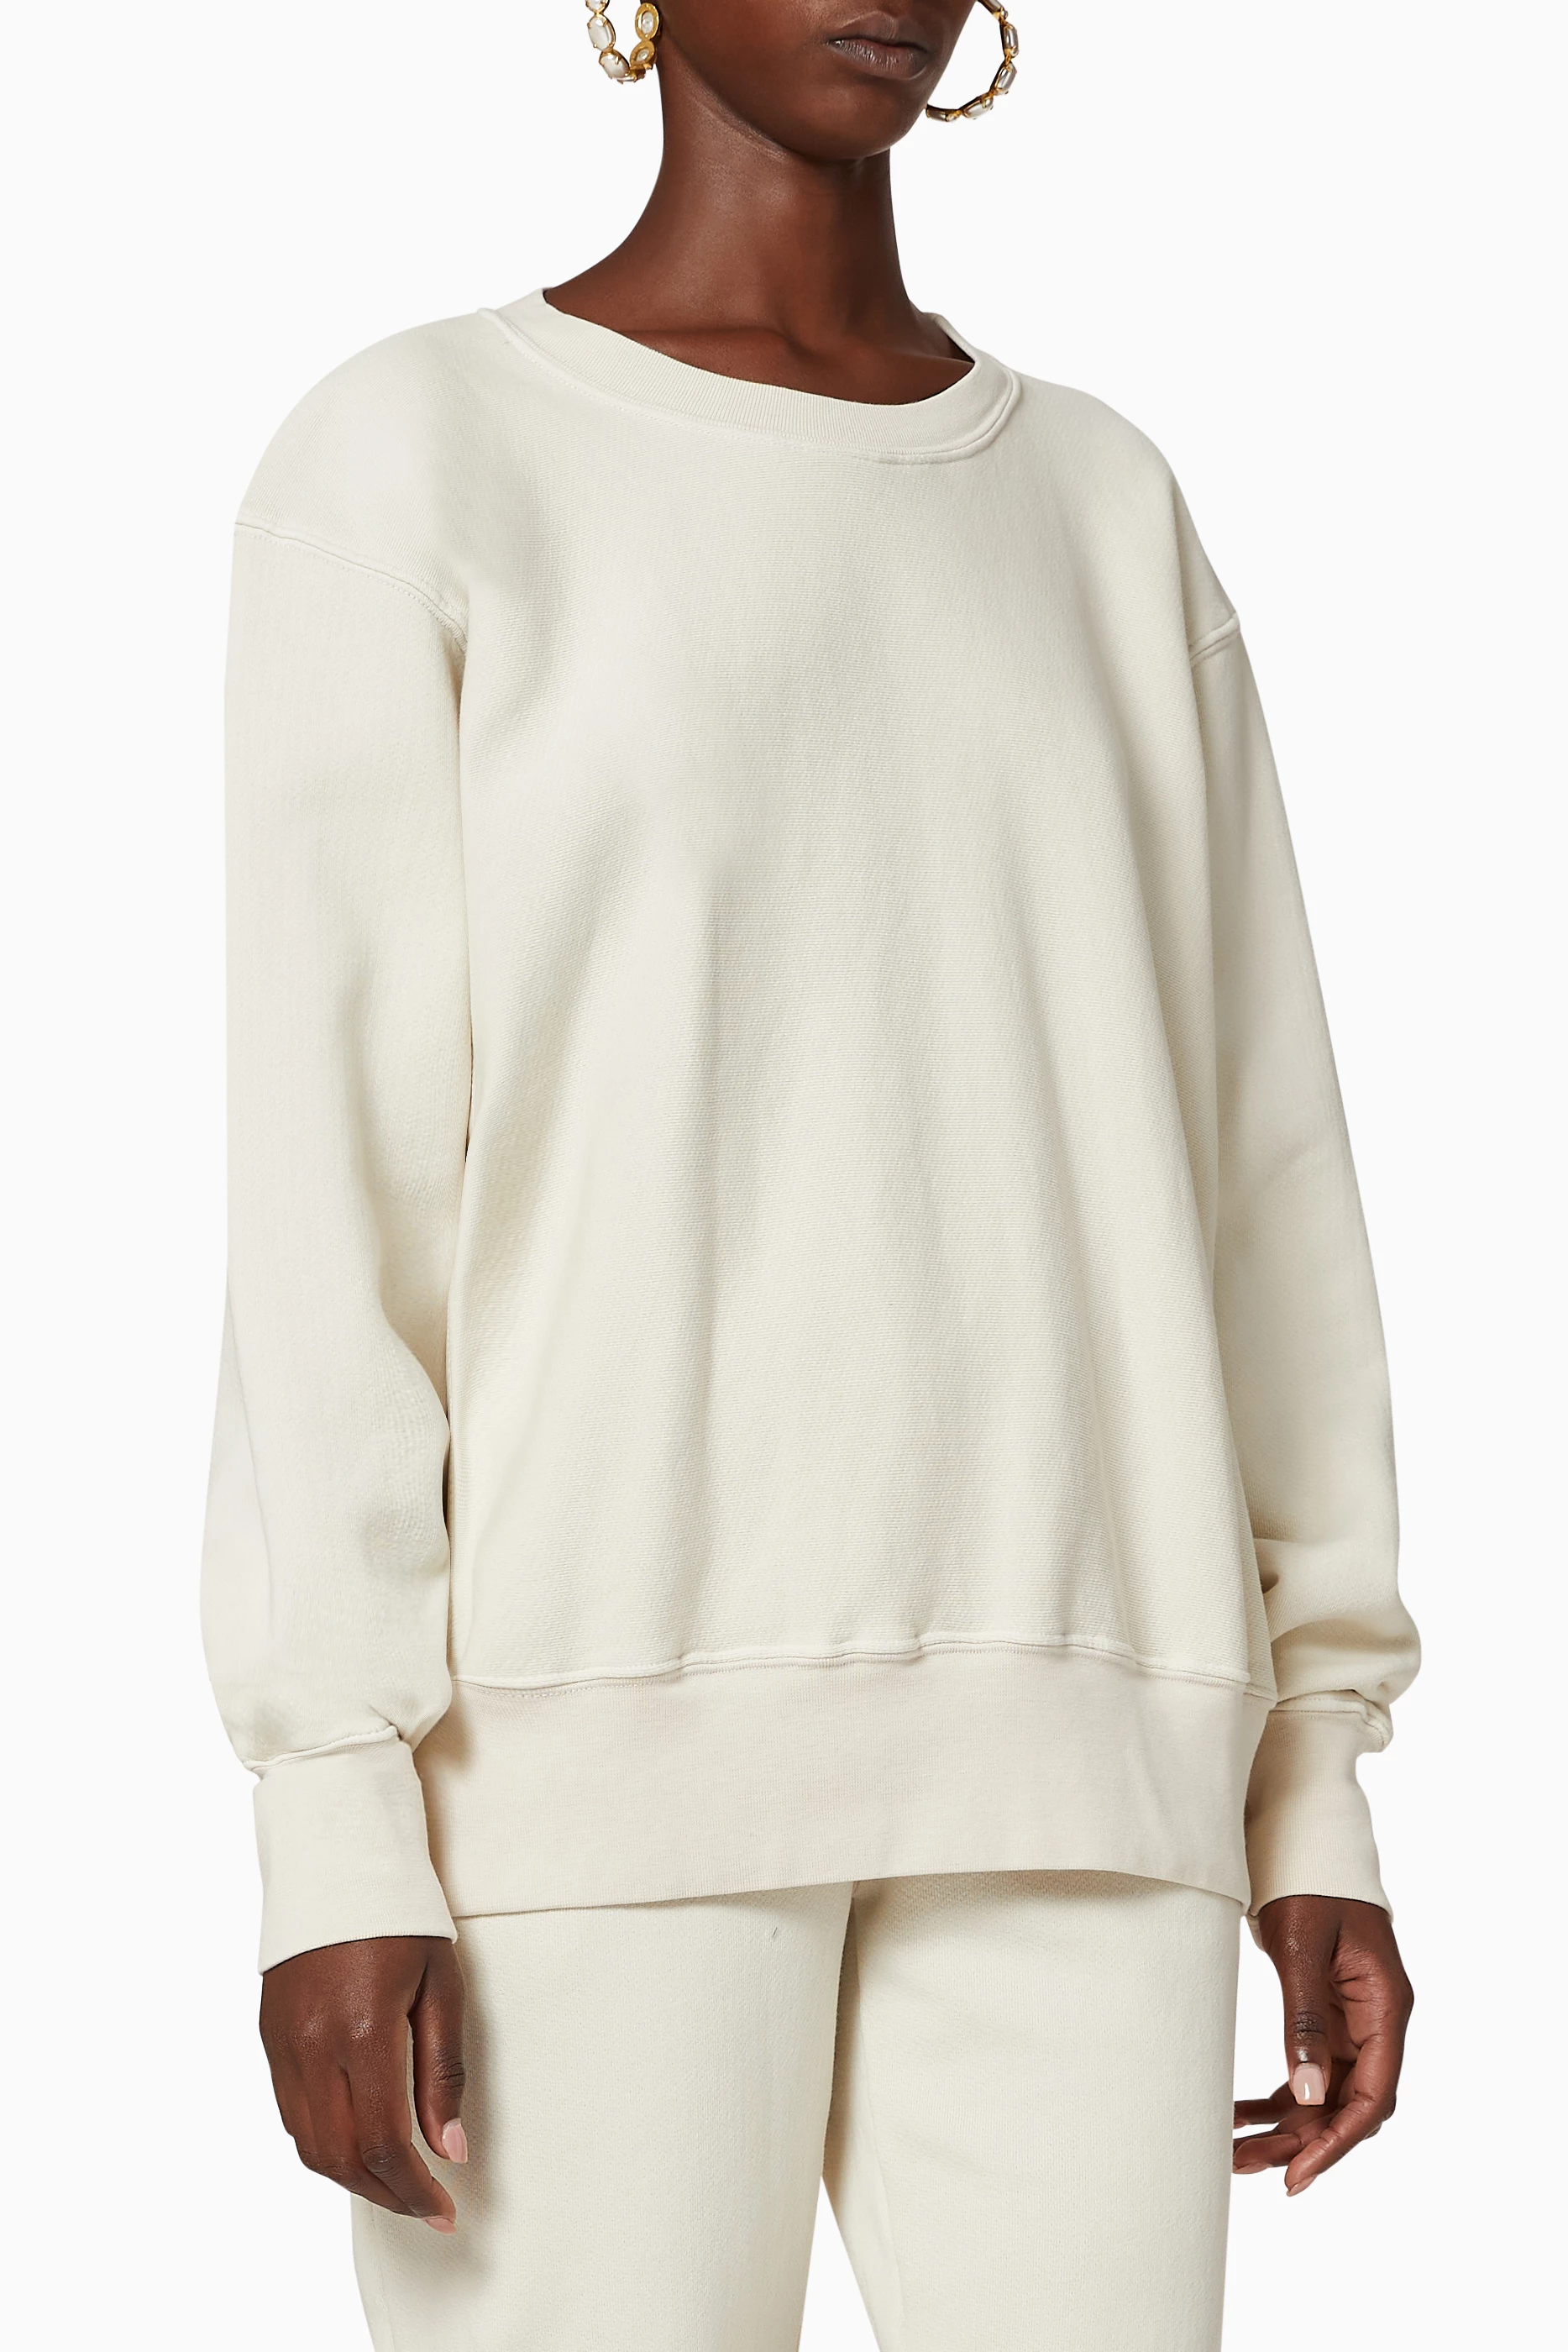 Buy Les Tien Neutral Crop Crew Jersey Sweatshirt for Women in UAE